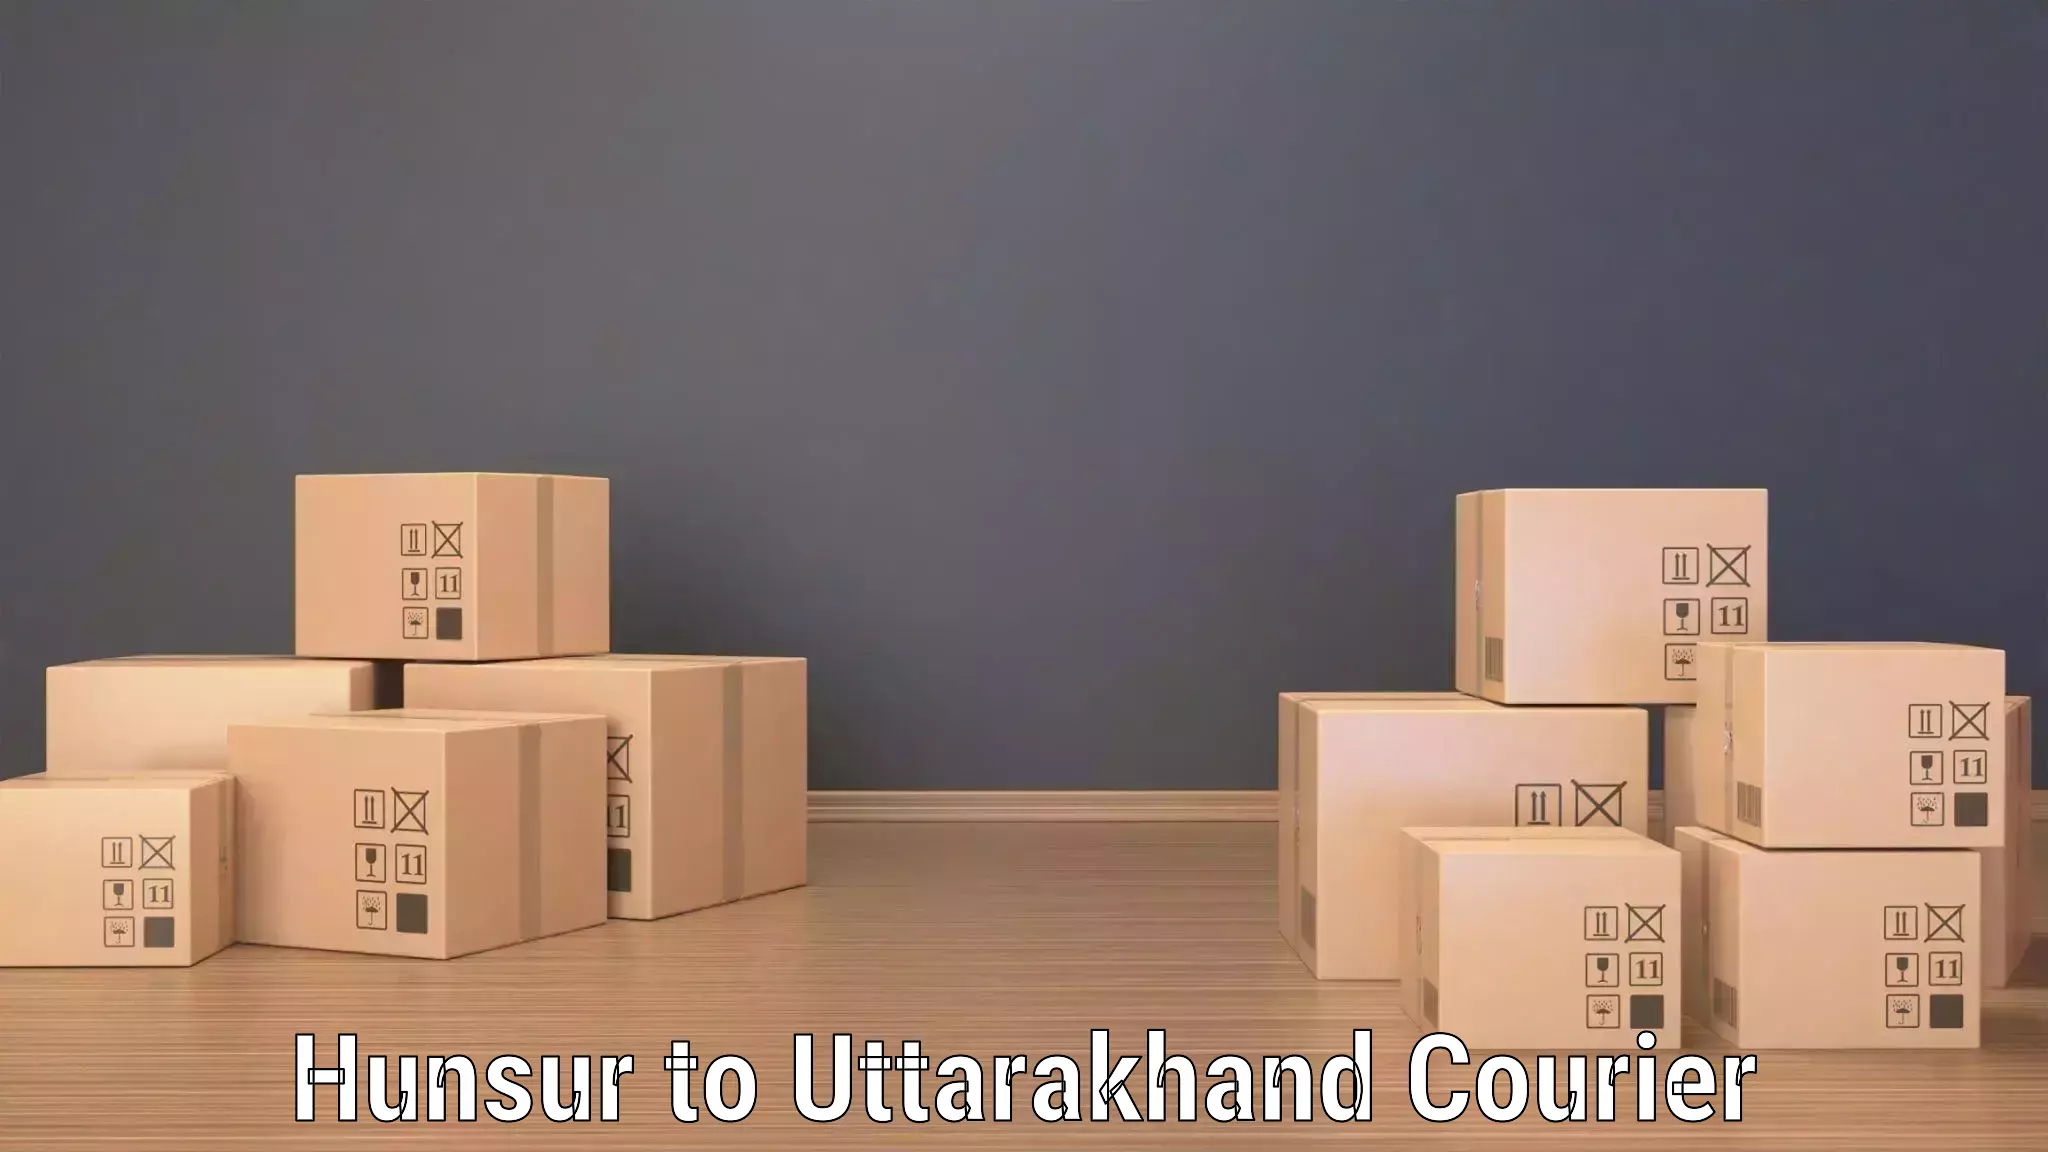 Bulk courier orders Hunsur to Uttarakhand